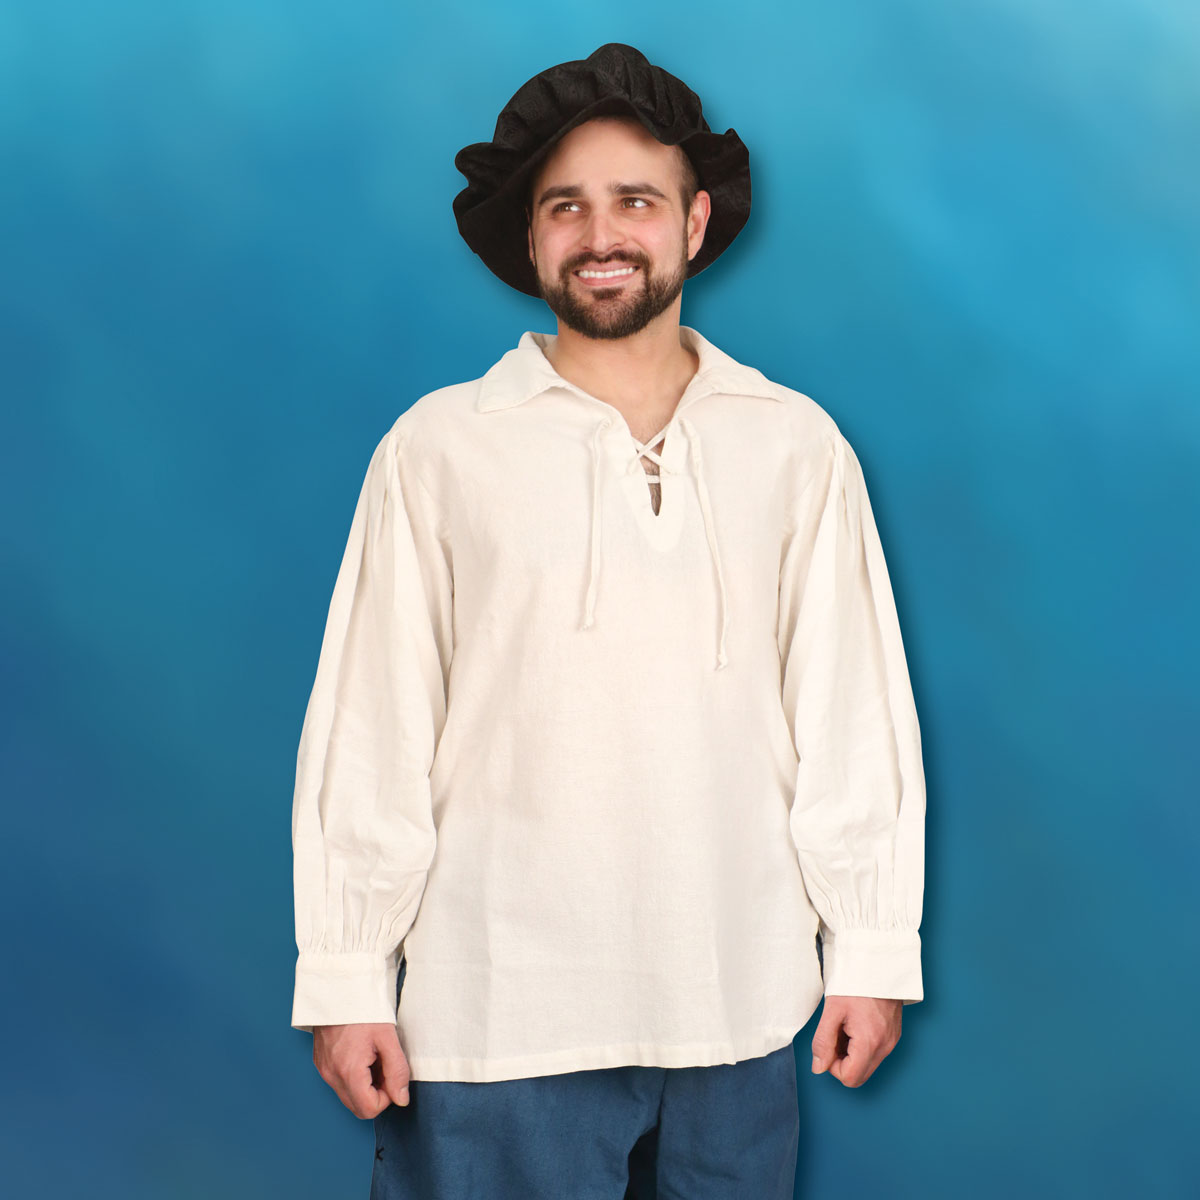 Hand-Stitched Men’s Renaissance Shirt, Size XL